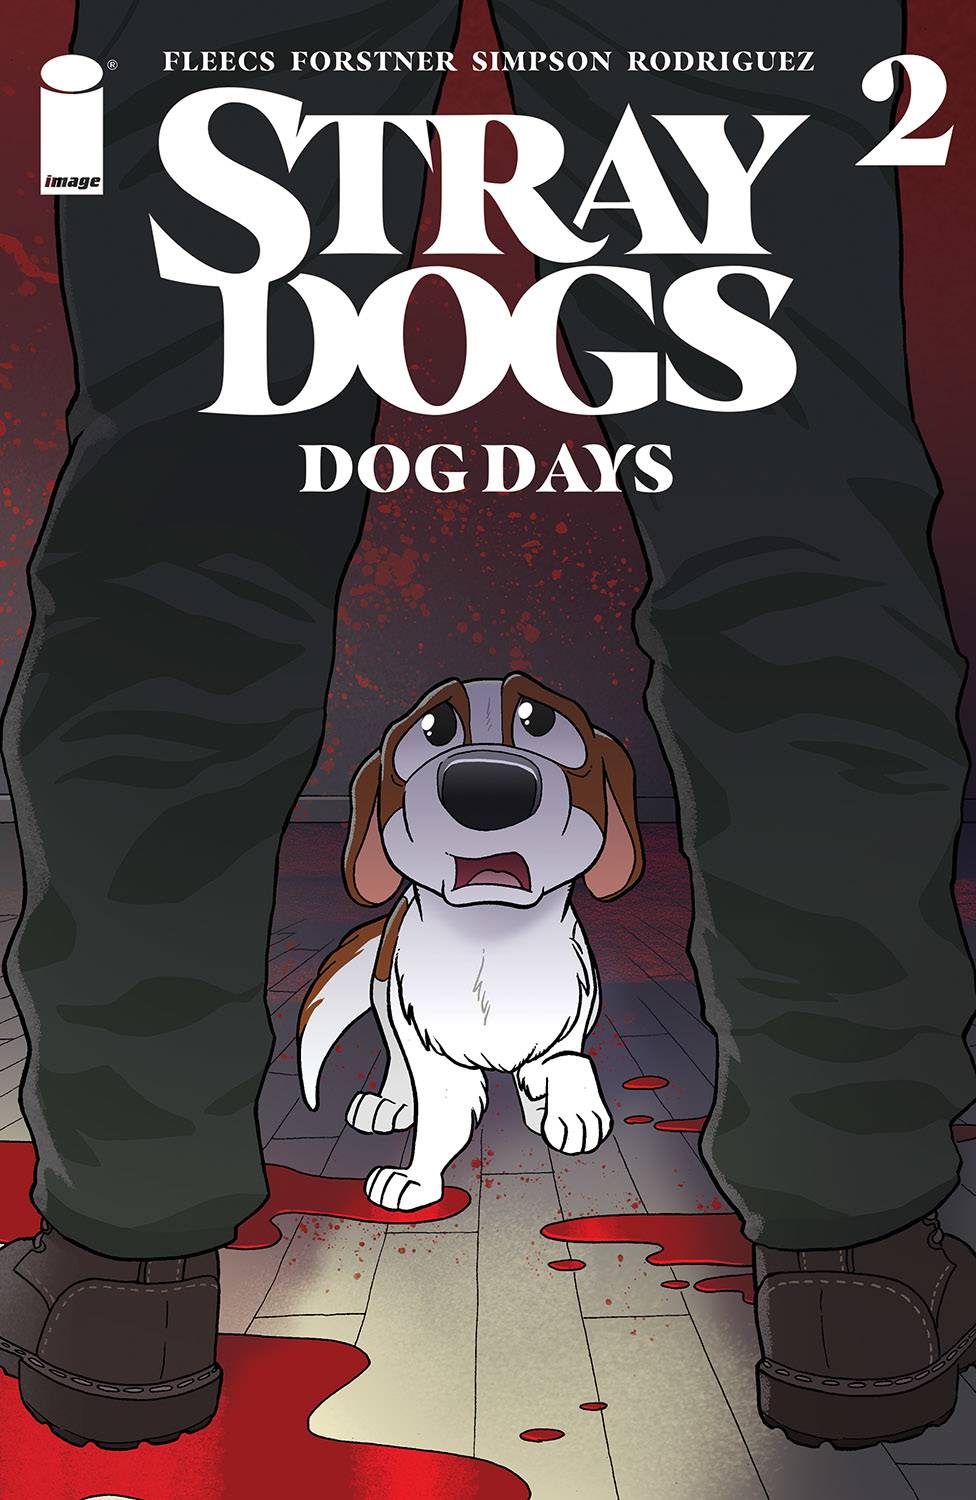 01/26/2022 STRAY DOGS DOG DAYS #2 (OF 2) CVR A FORSTNER & FLEECS